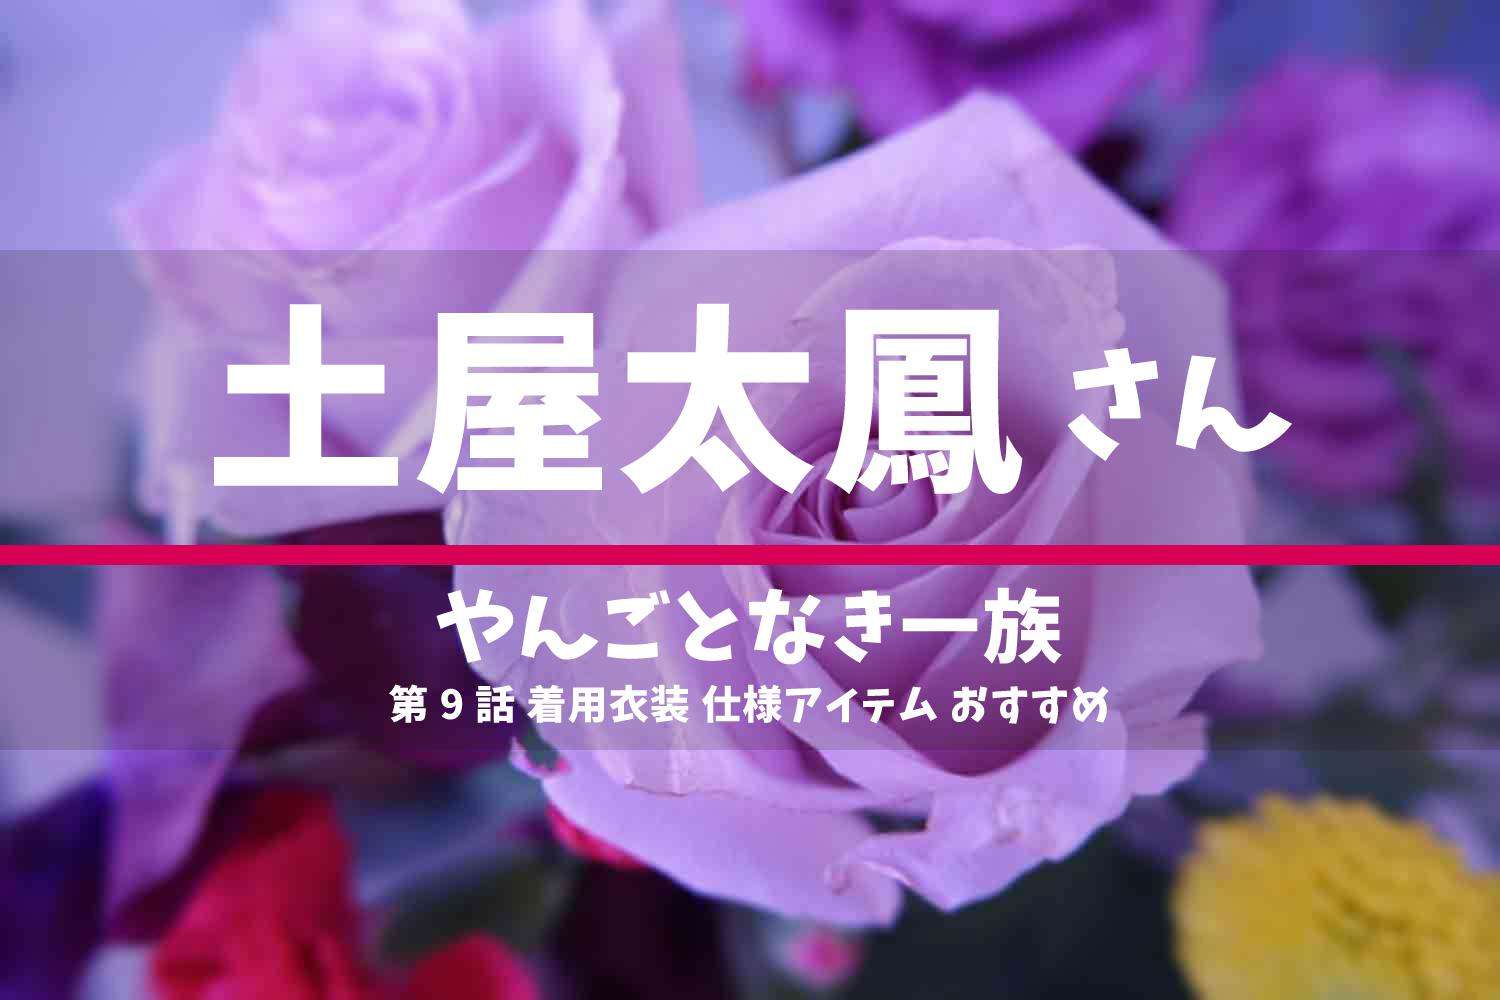 やんごとなき一族 土屋太鳳さん ドラマ 衣装 2022年6月16日放送